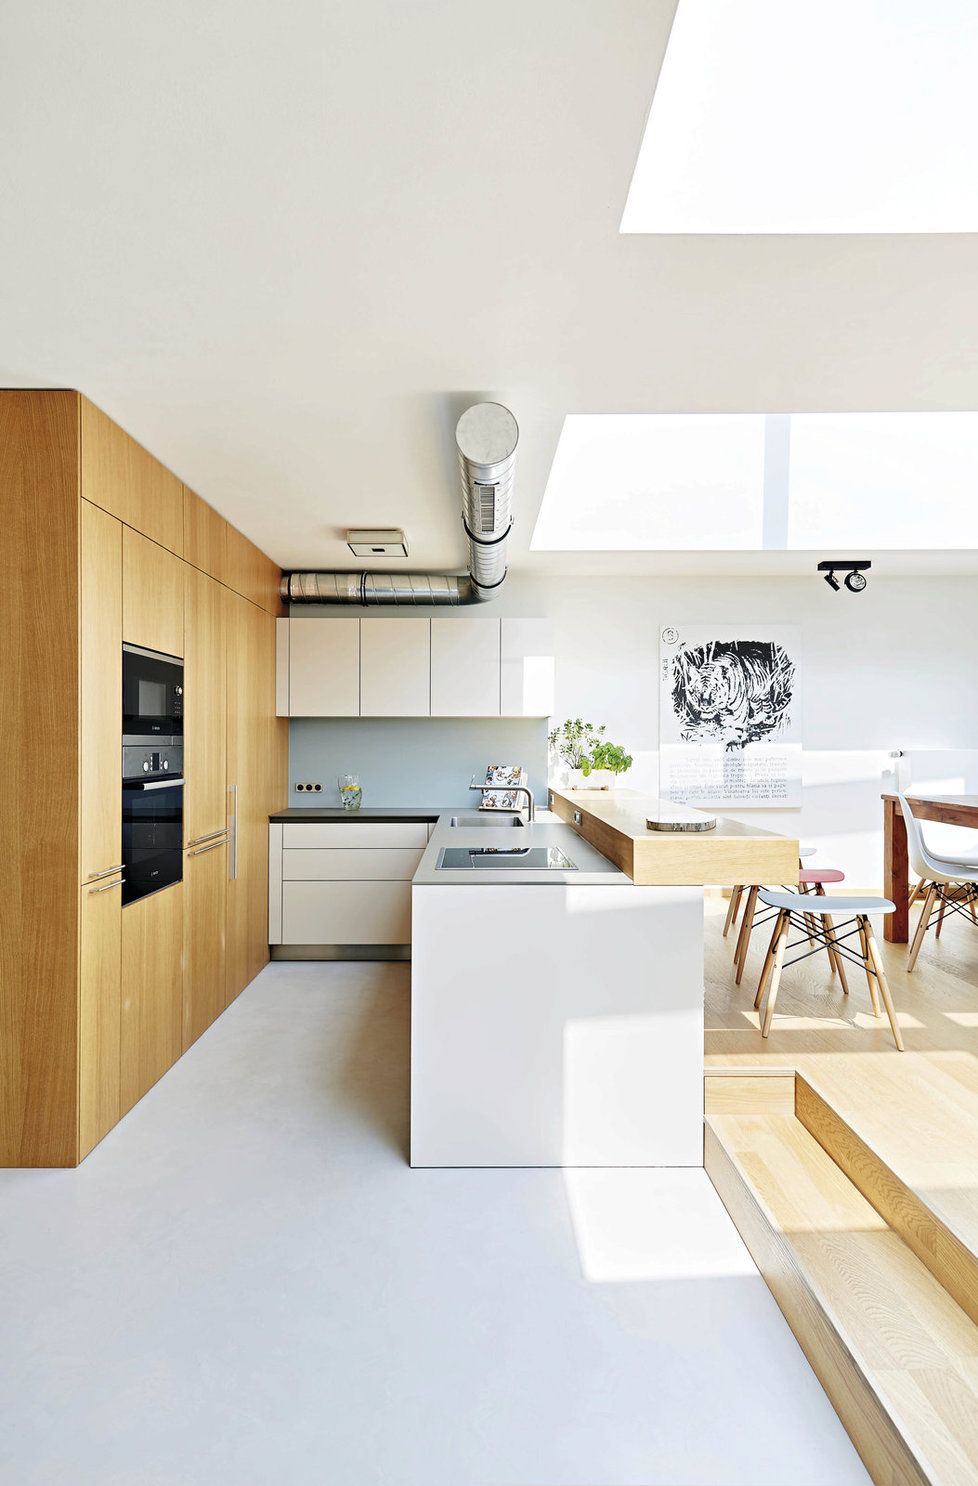 Kuchyň. Součástí dřevěného boxu jsou i dveře vedoucí do spíže. Minimalistické zařízení kuchyně neruší klidnou atmosféru prostoru s jídelnou a obývákem.